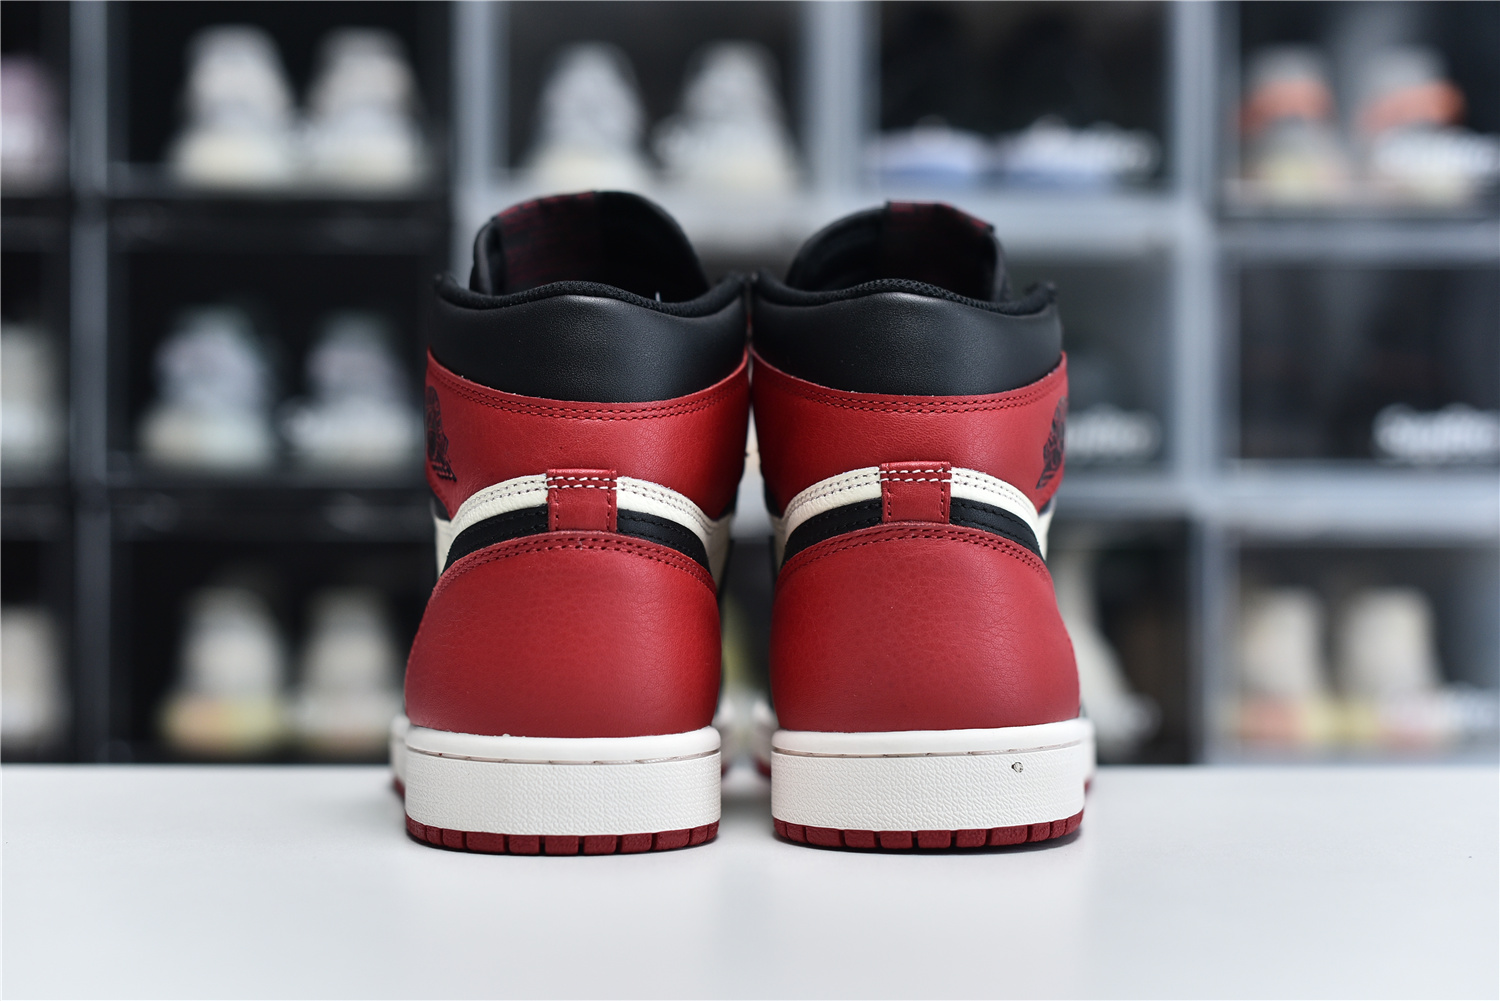 Nike Air Jordan 1 Retro High Og Red Black White Men Sneakers 555088 610 Kickbulk 4 - www.kickbulk.co